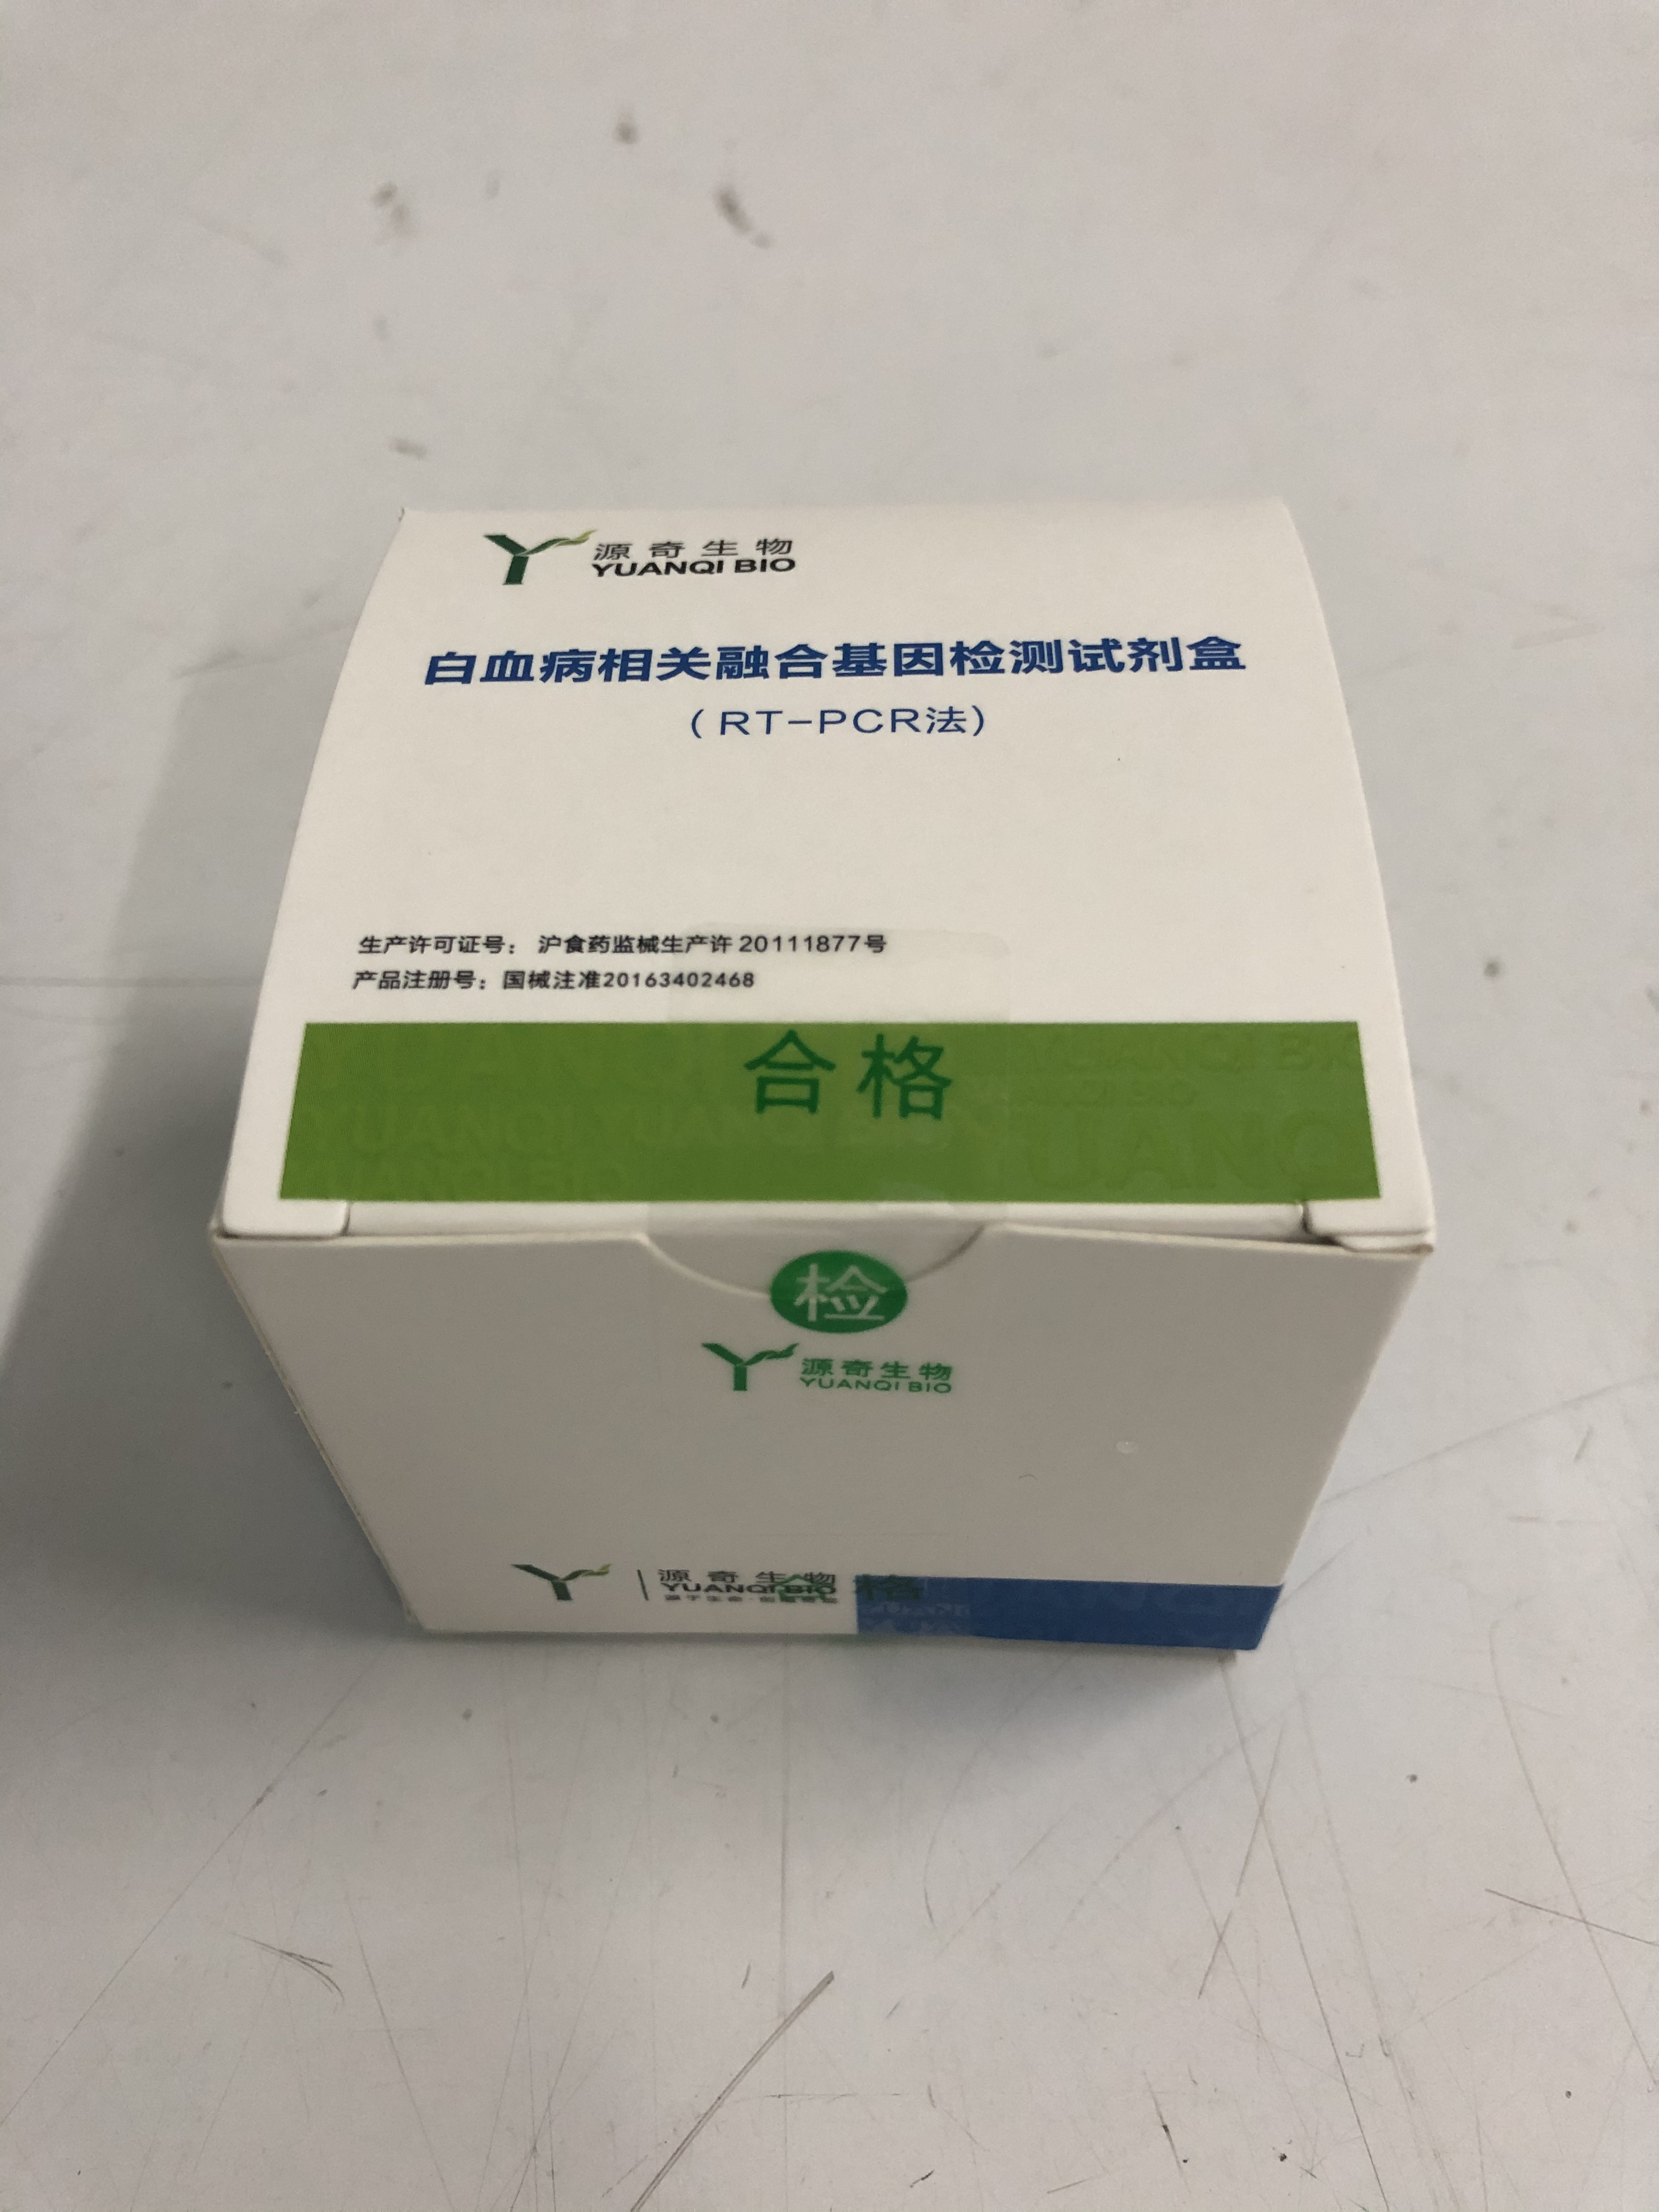 【源奇】白血病相关融合基因检测试剂盒(RT-PCR法)-云医购